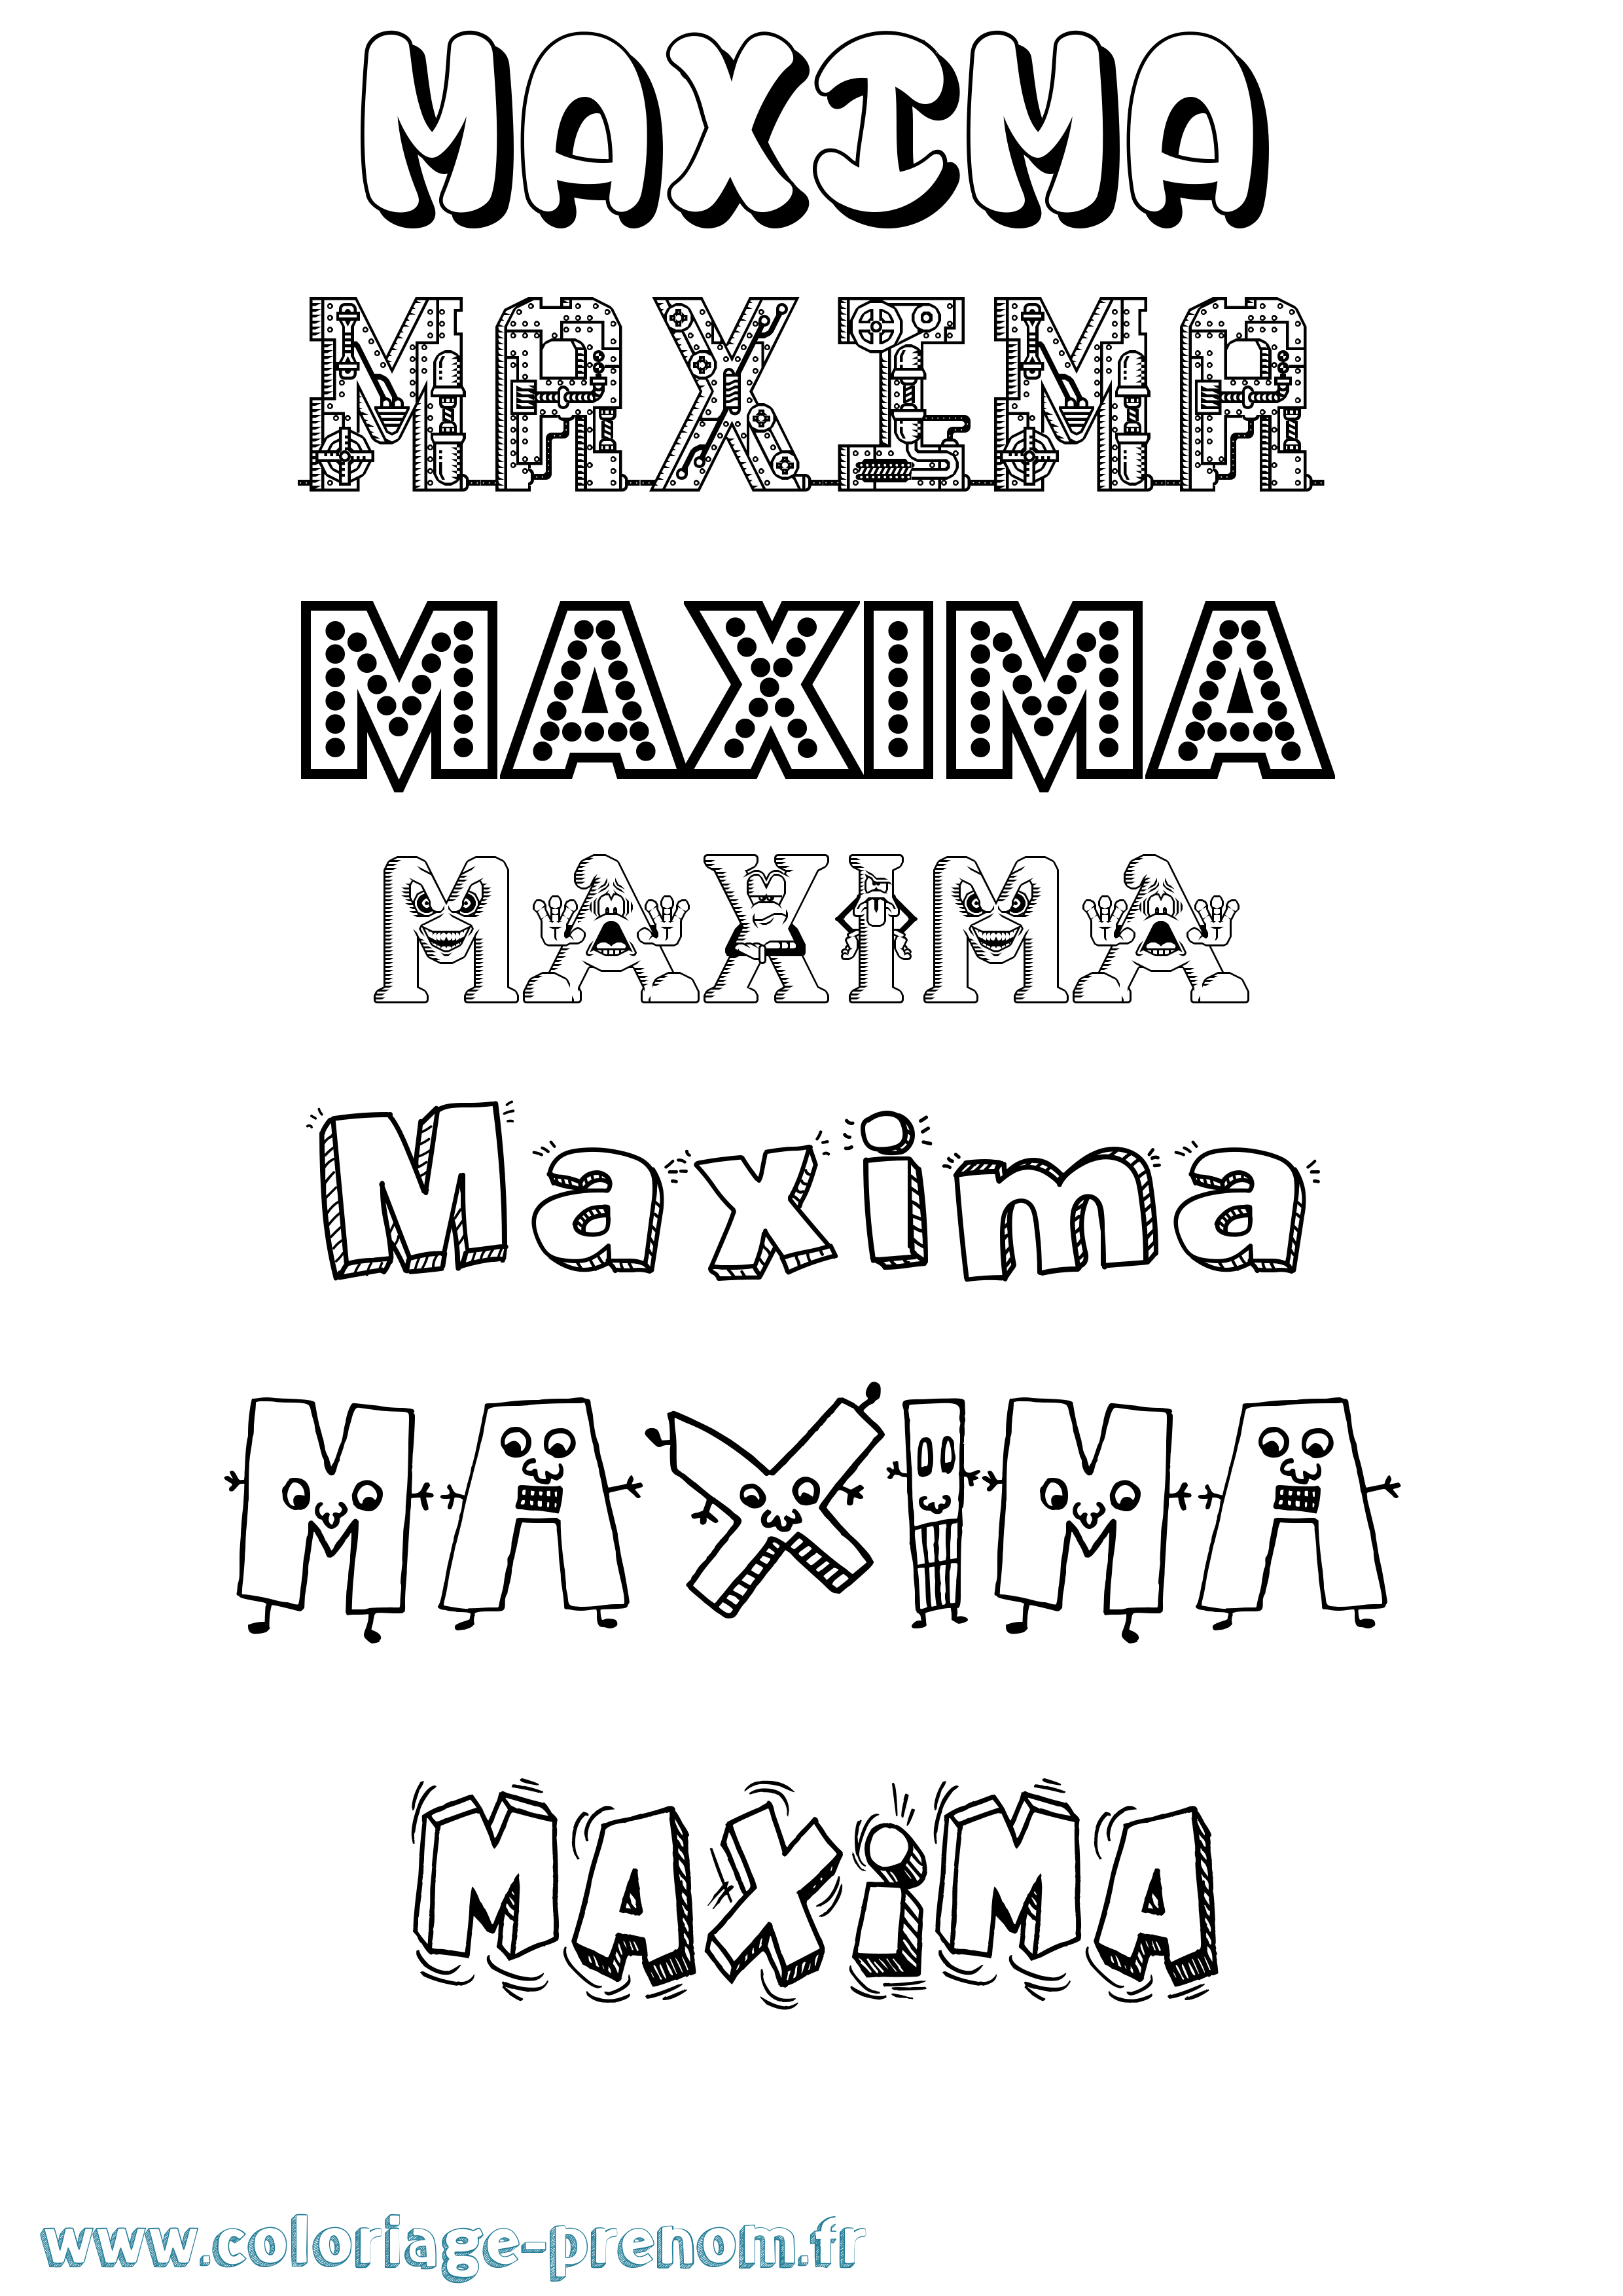 Coloriage prénom Maxima Fun